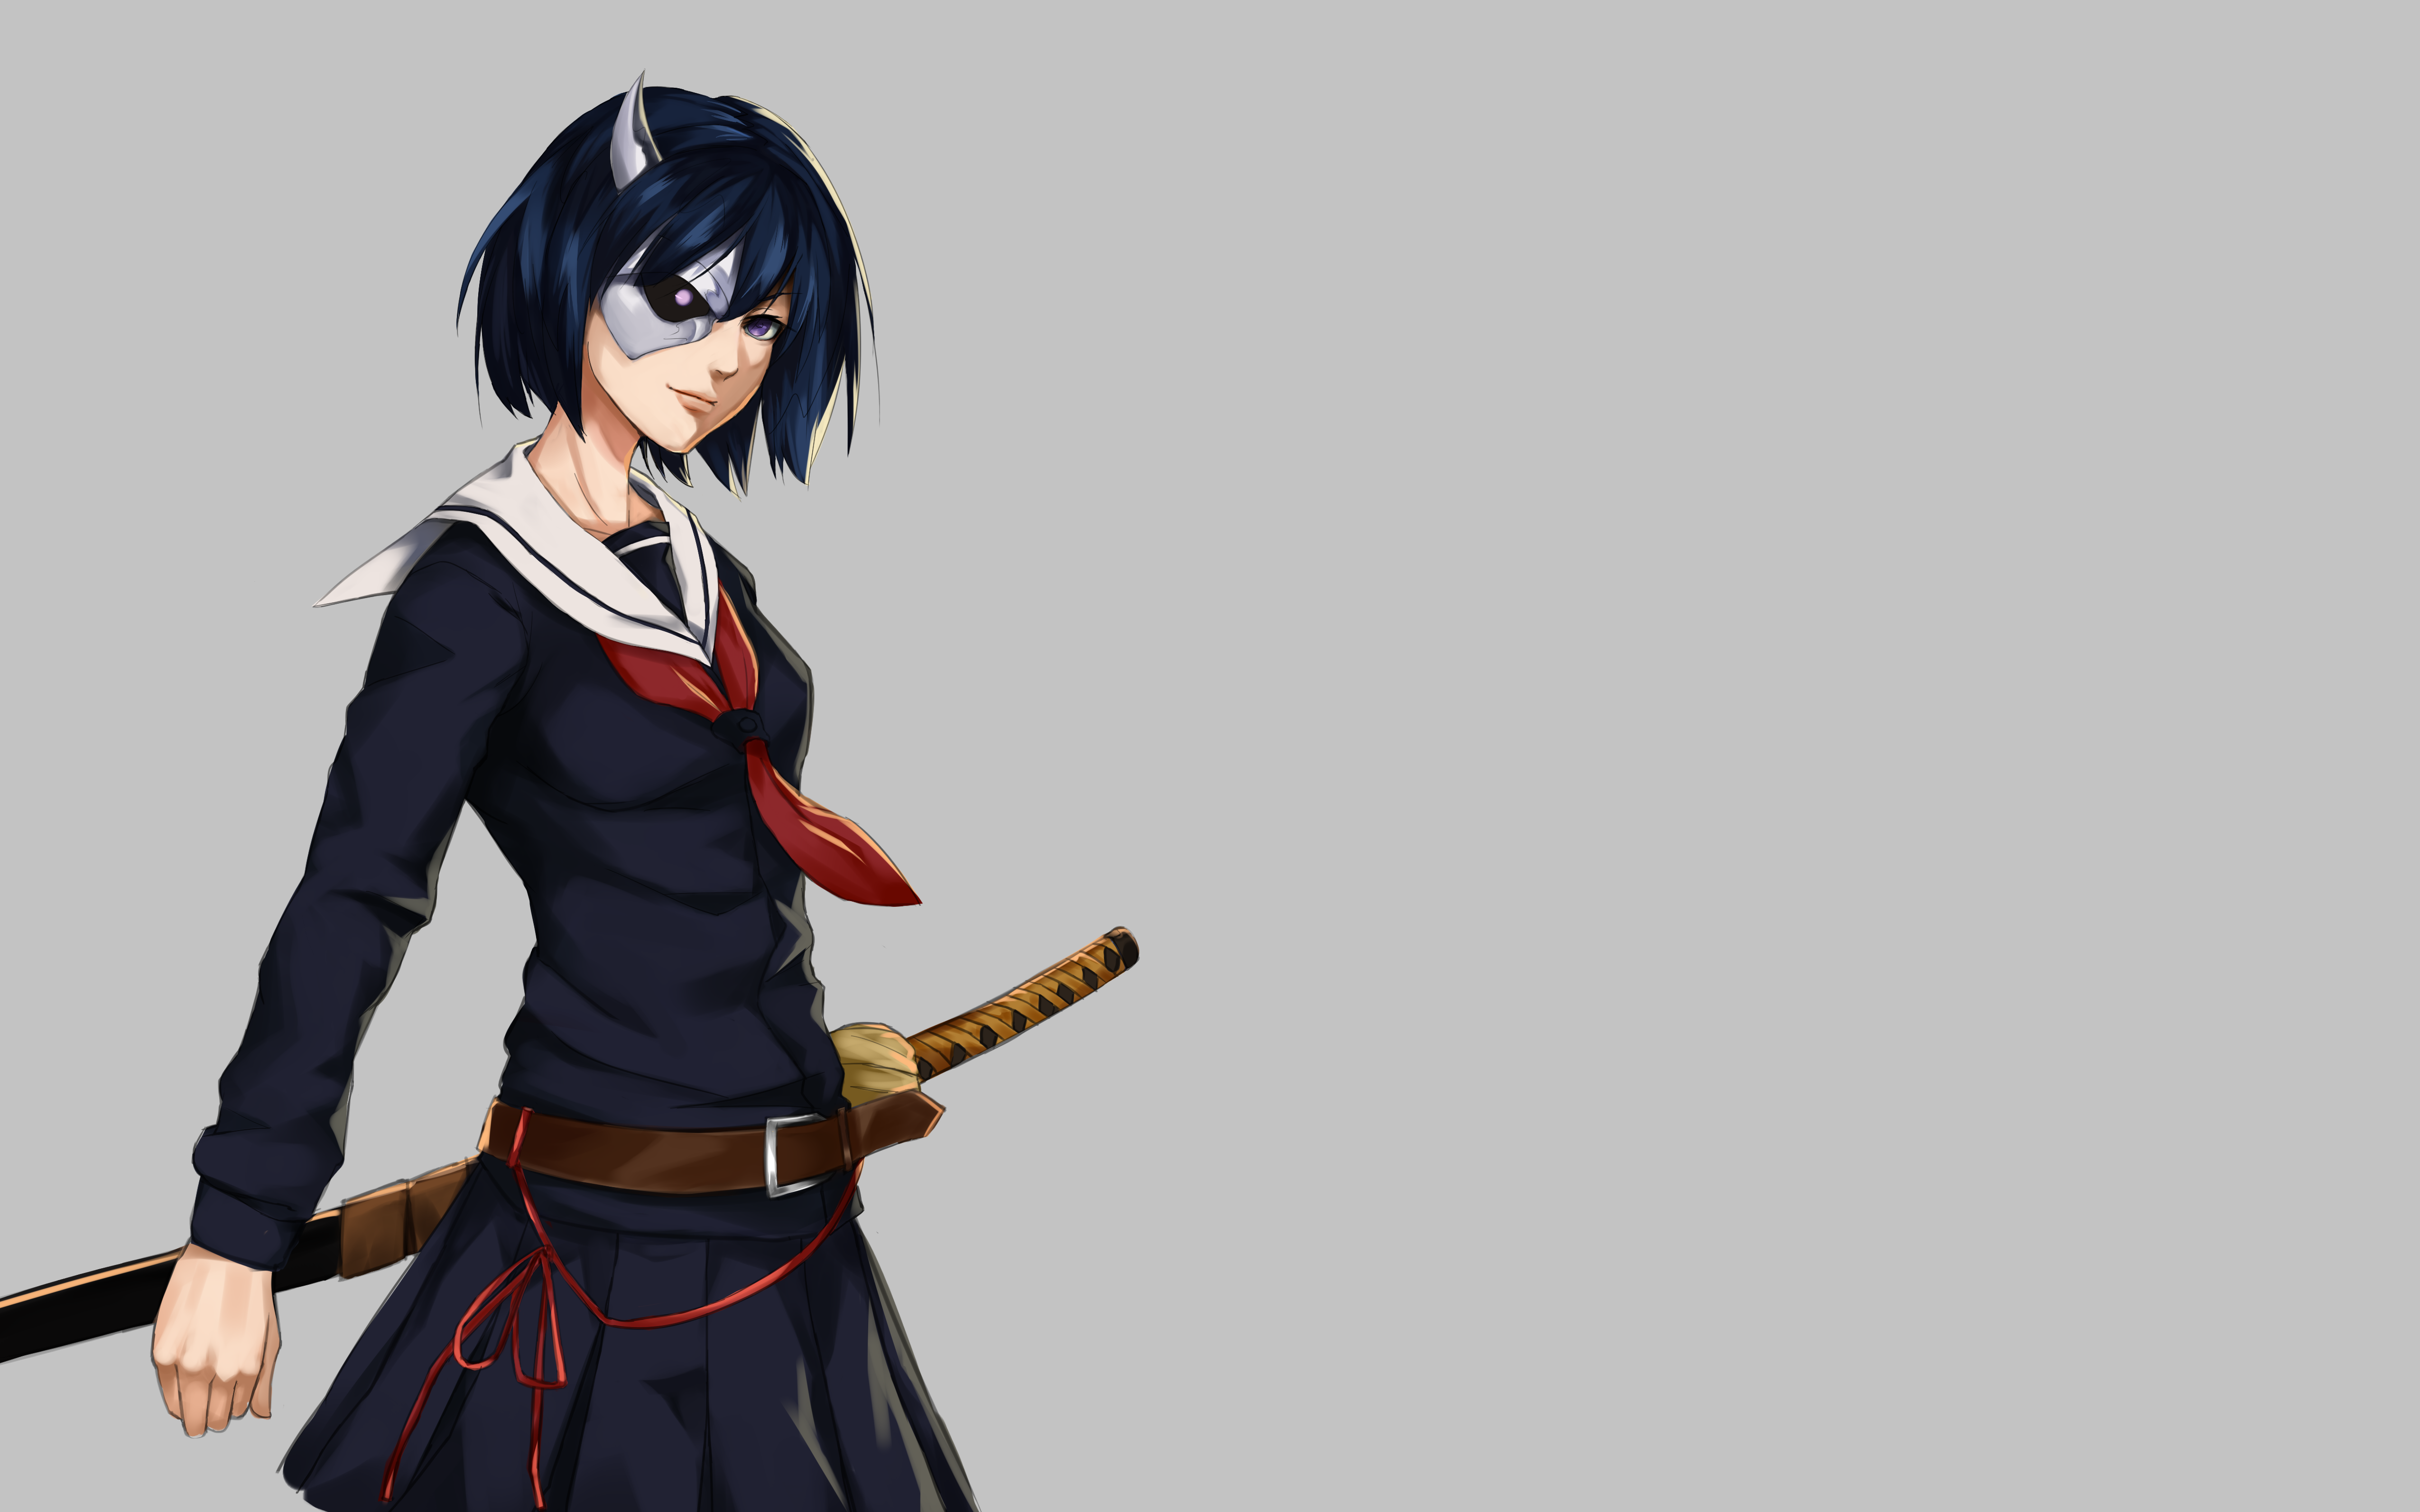 Anime Armed Girl's Machiavellism 4k Ultra HD Wallpaper